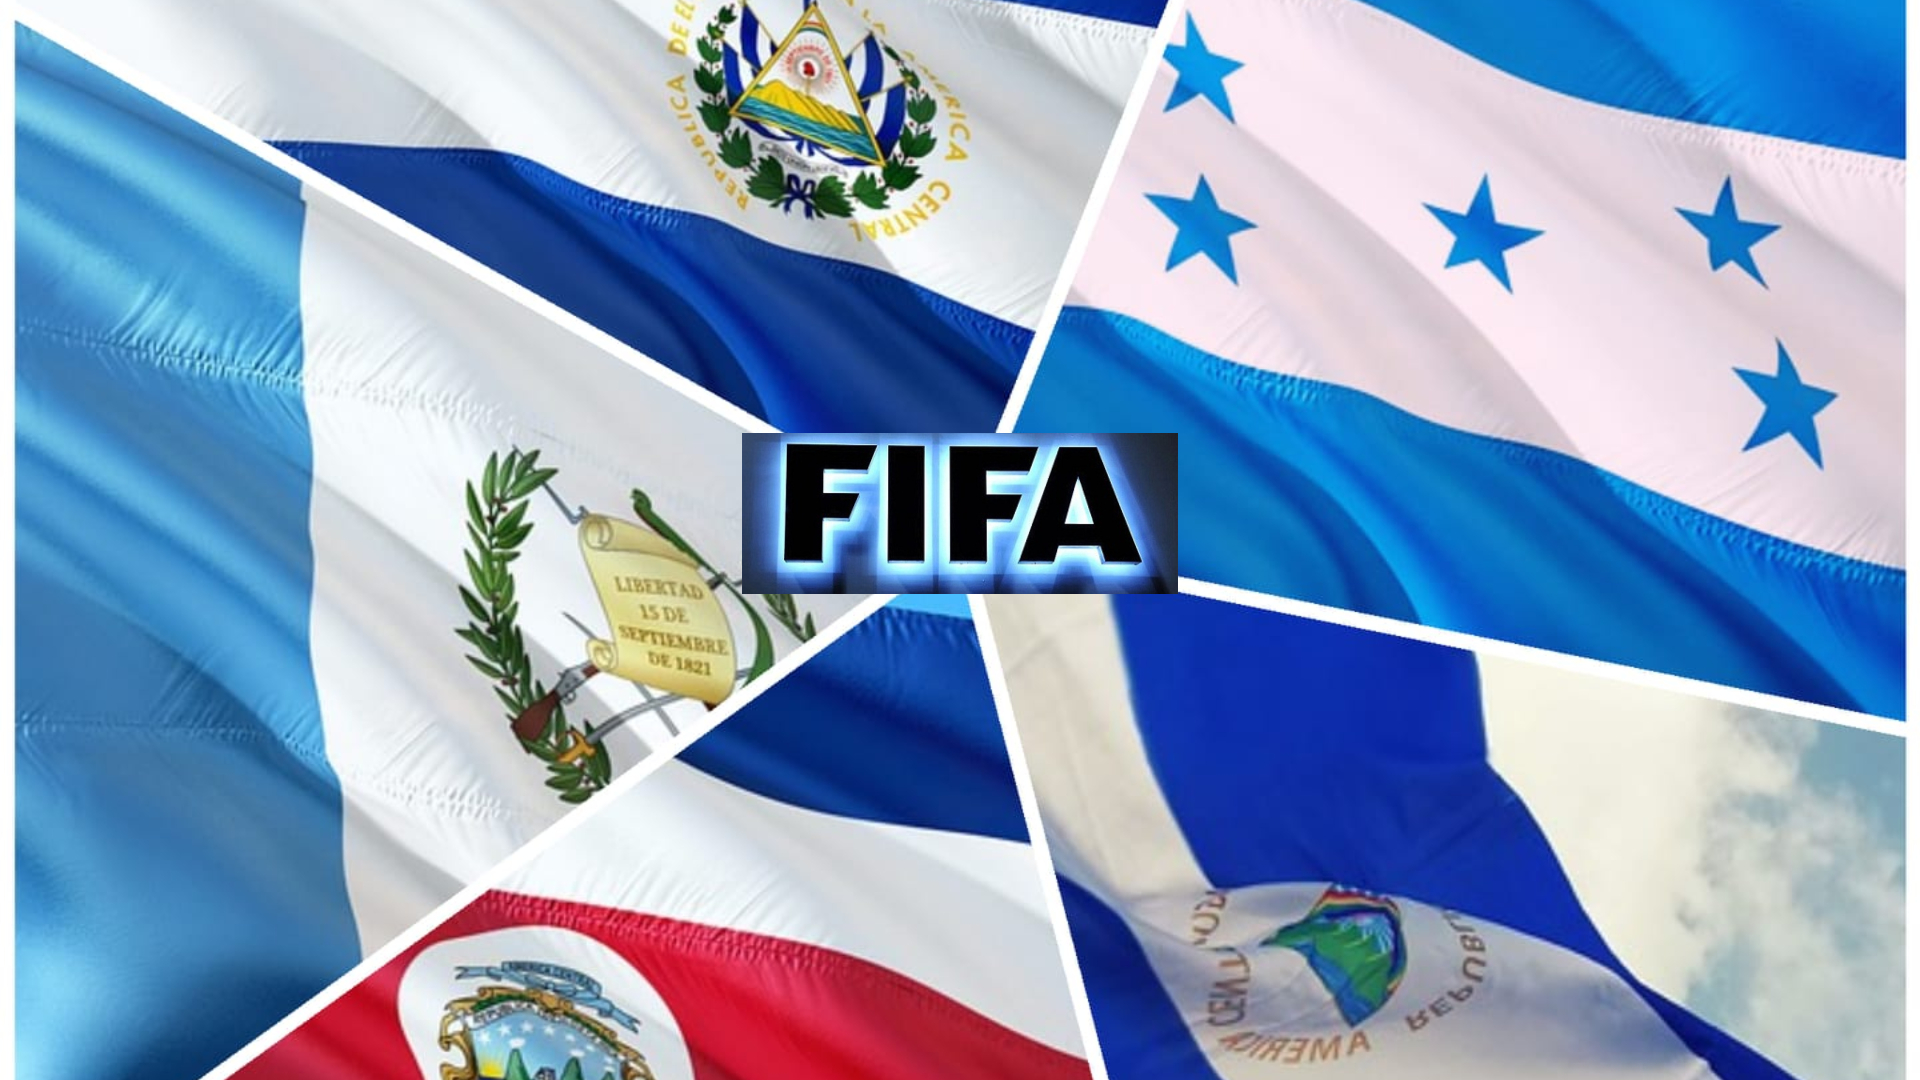 Las selecciones centroamericanas no lograron avanzar o mantener el puesto en el Ranking FIFA del mes de marzo, en comparación con el ranking anterior, excepto Costa Rica.